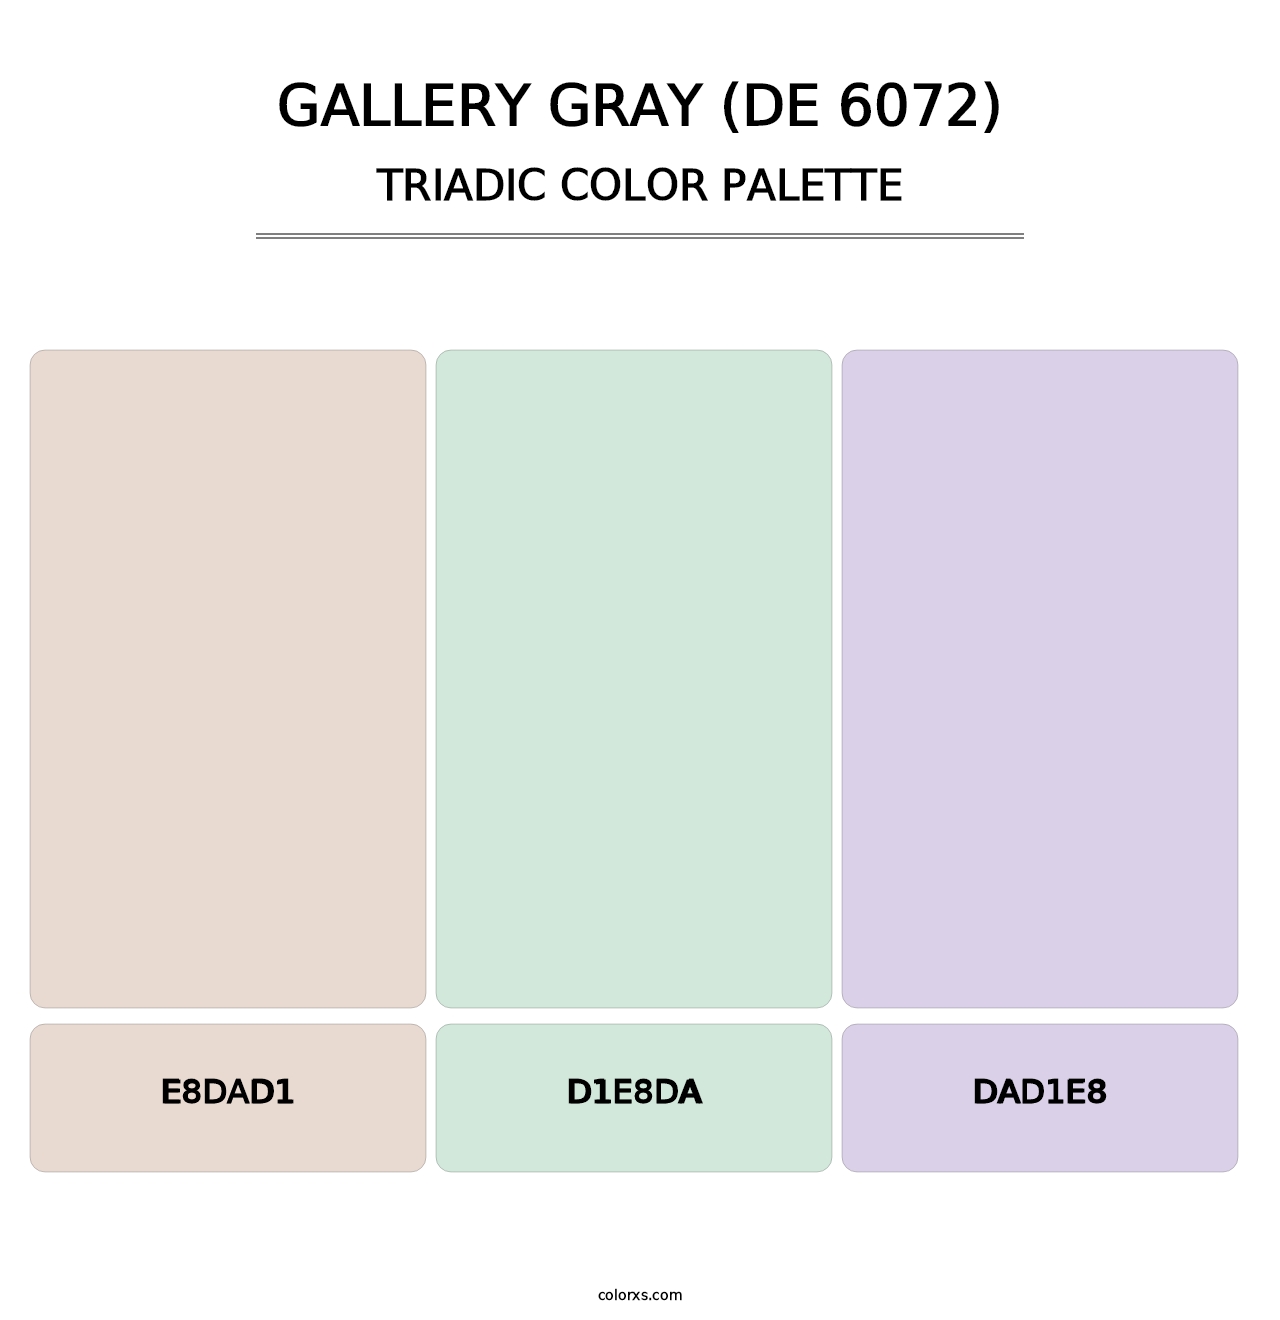 Gallery Gray (DE 6072) - Triadic Color Palette